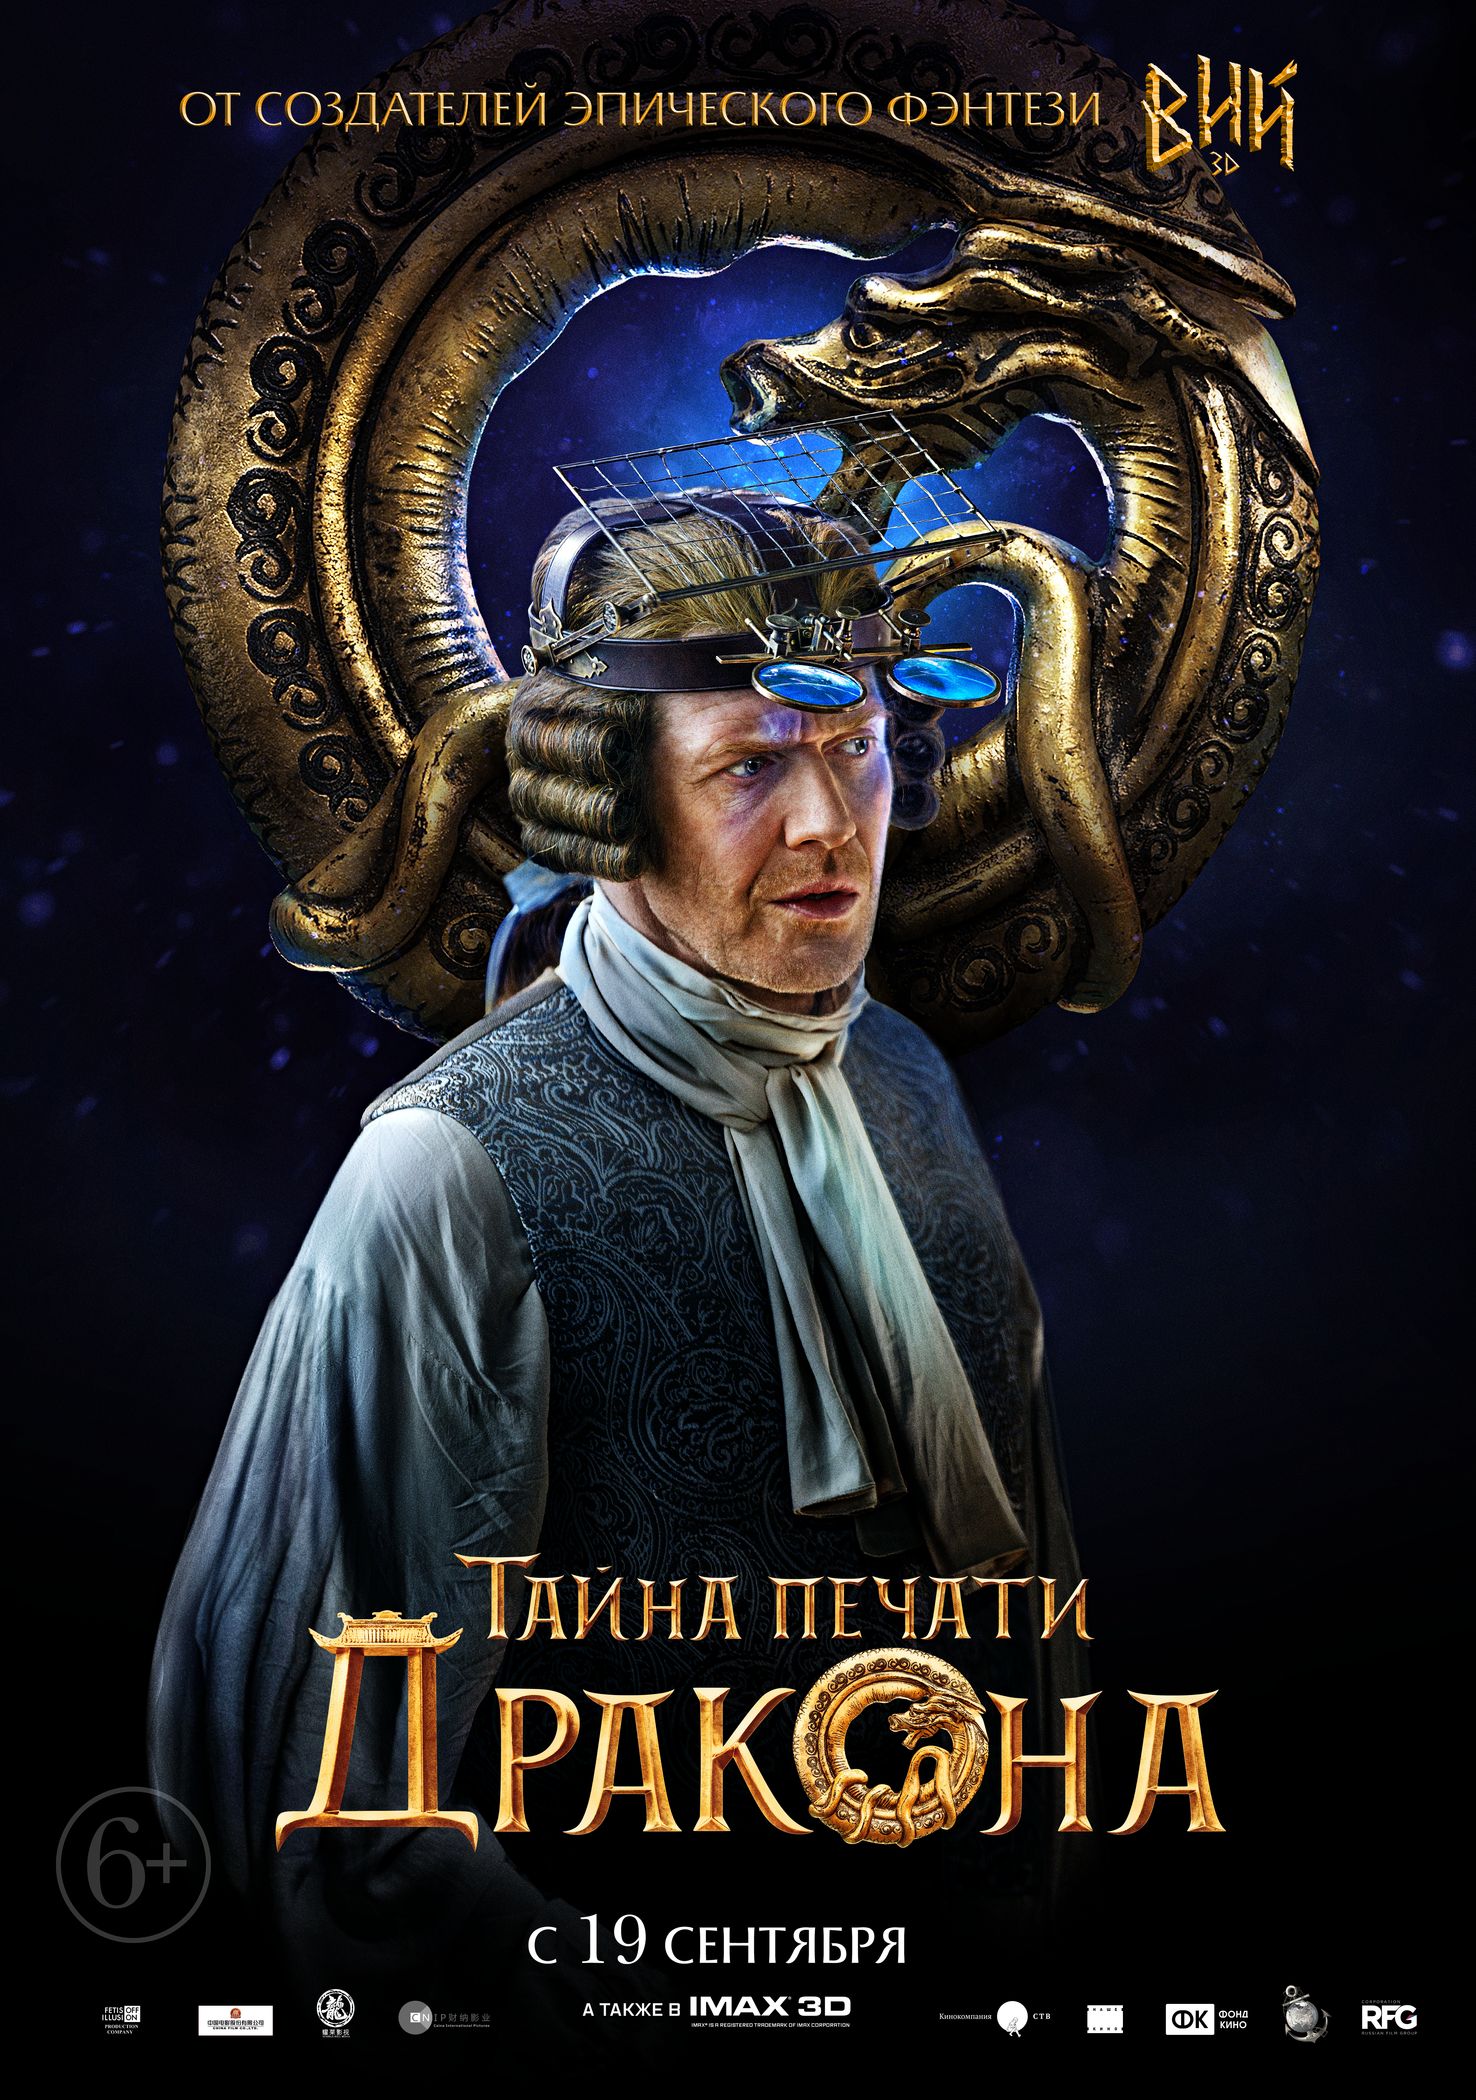 Тайна Печати дракона, постер № 10